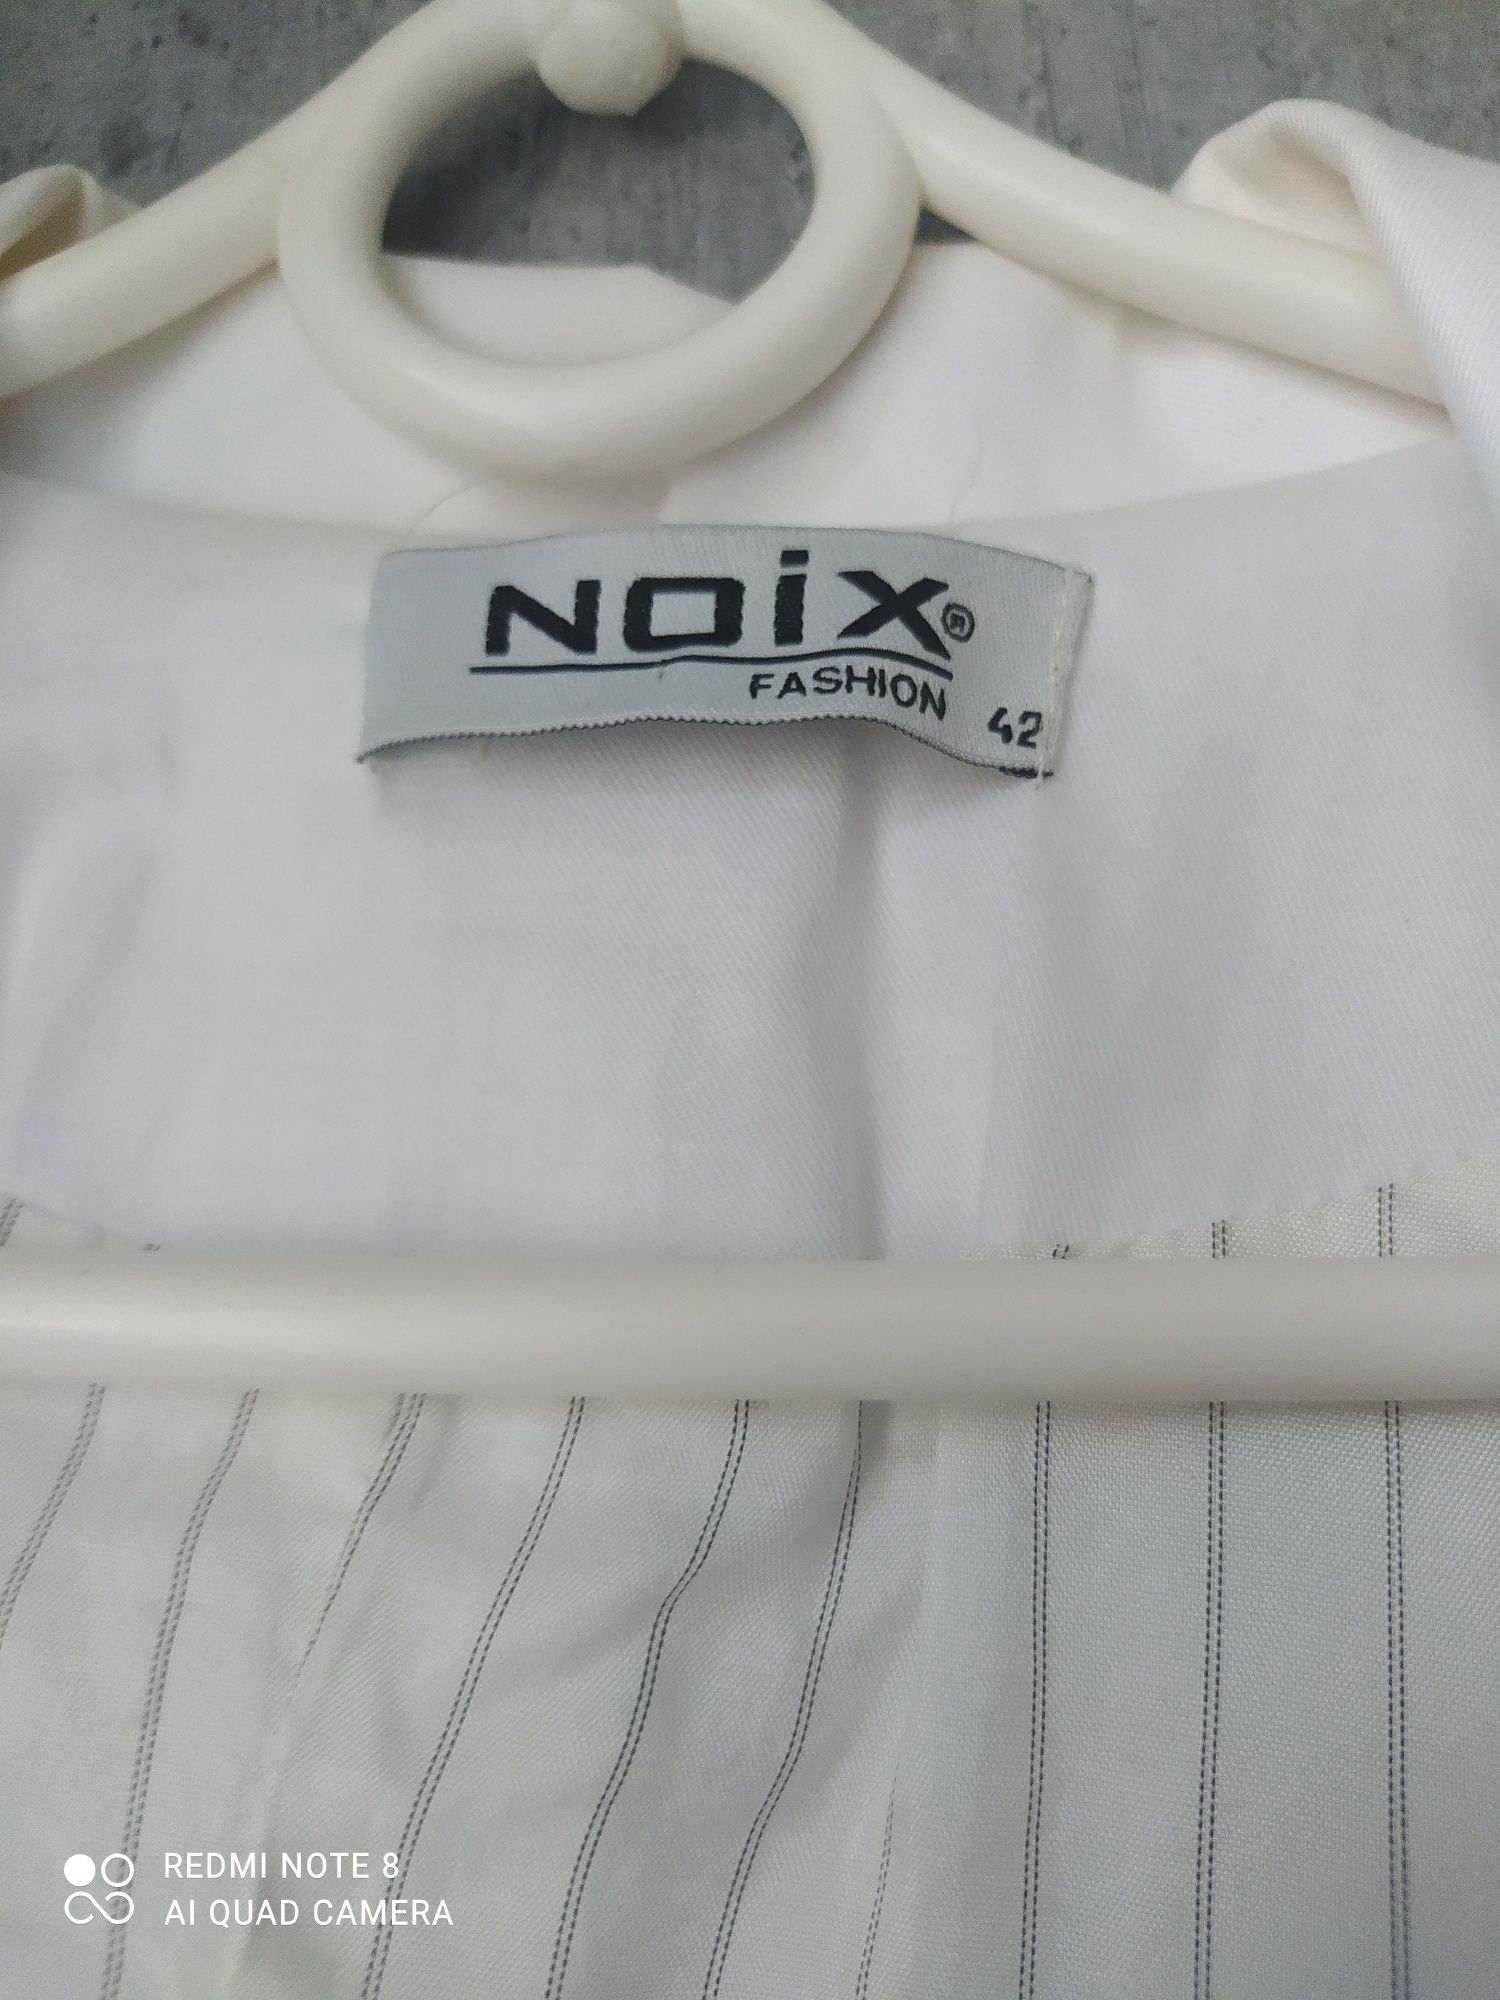 Biała marynarka Noix Fashion rozmiar 42